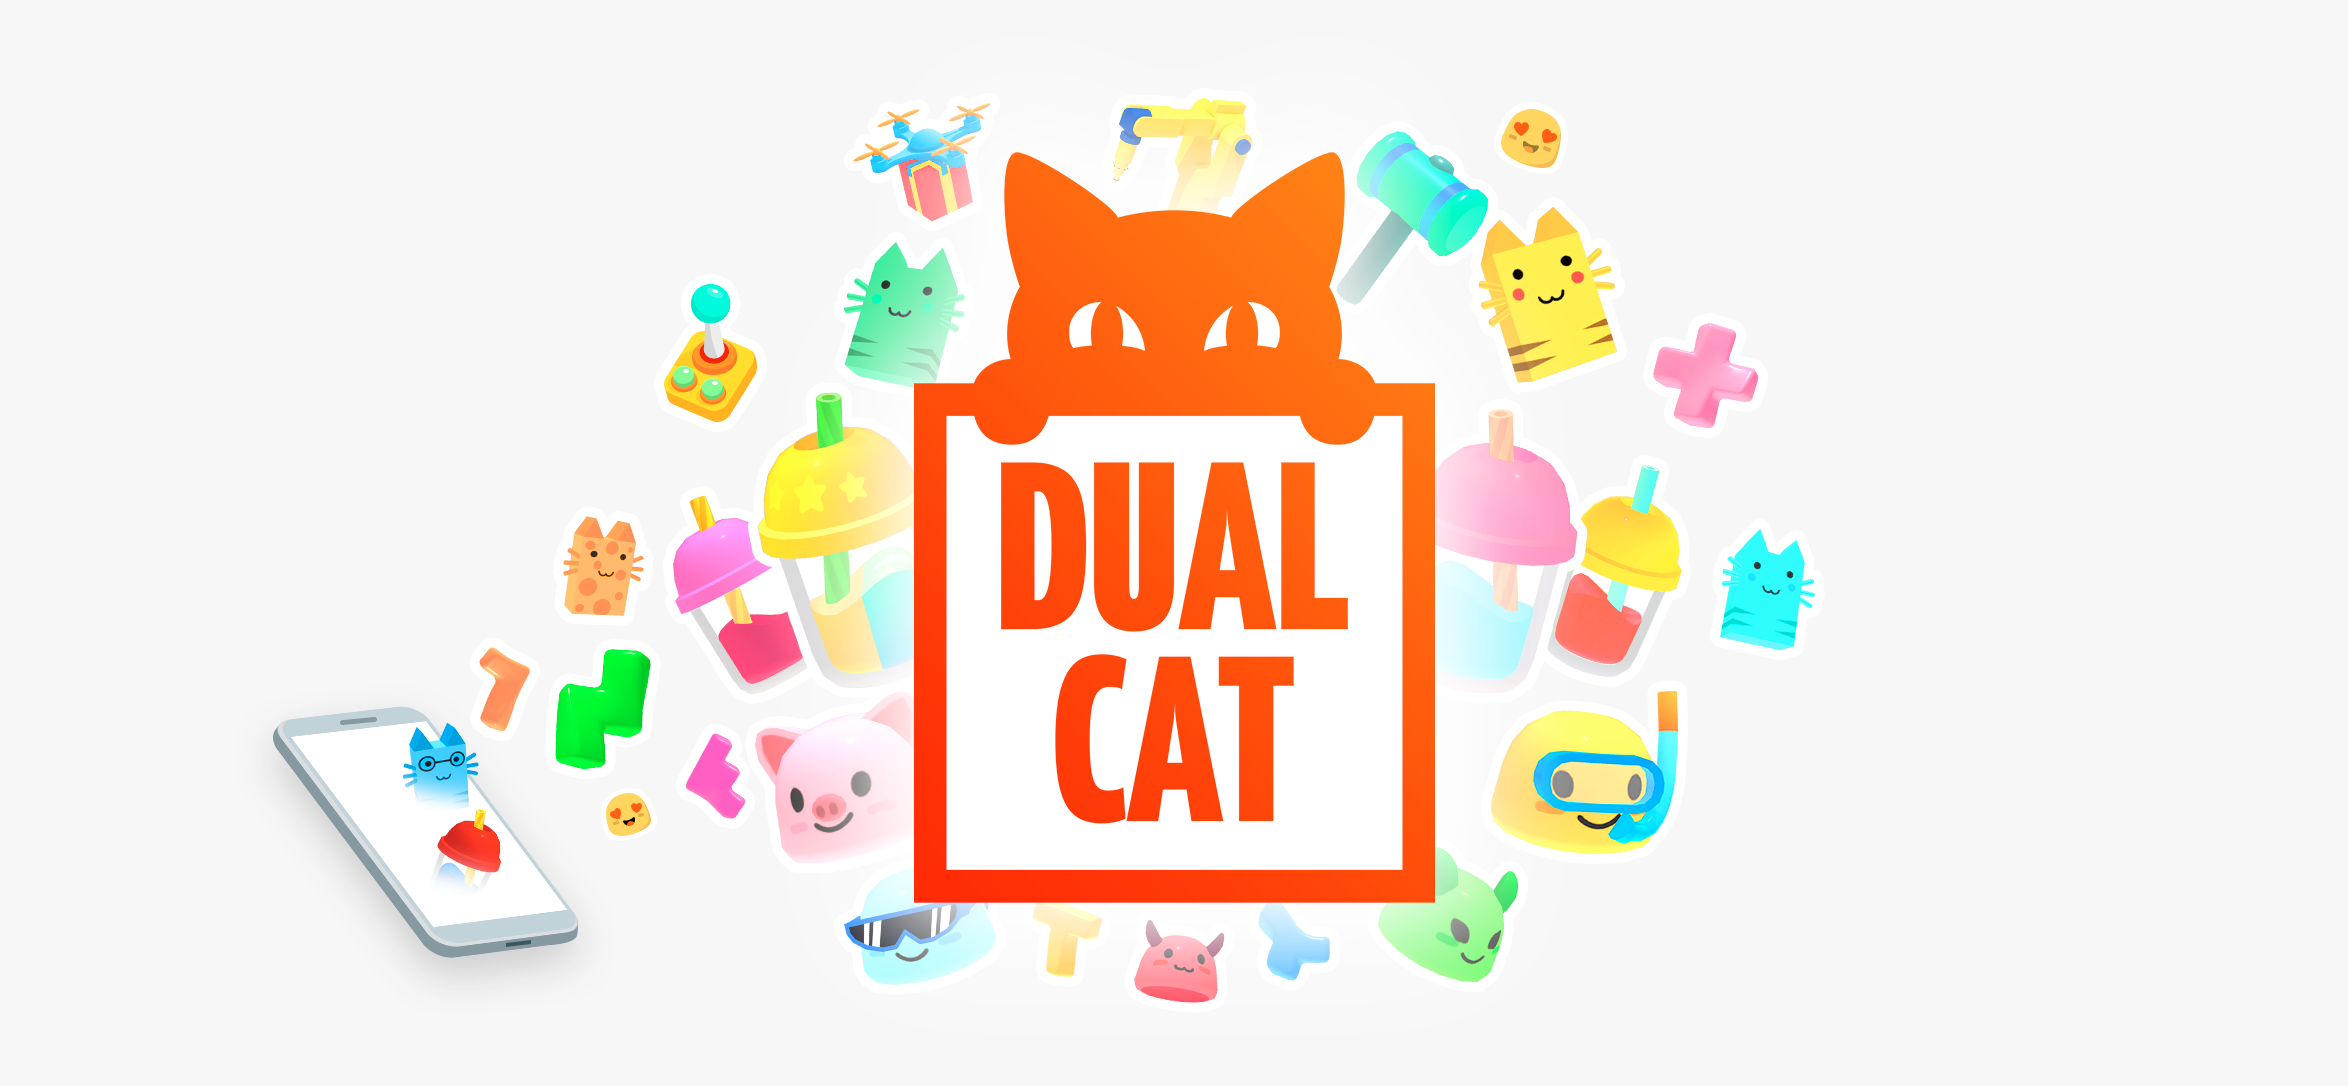 (c) Dualcat.io